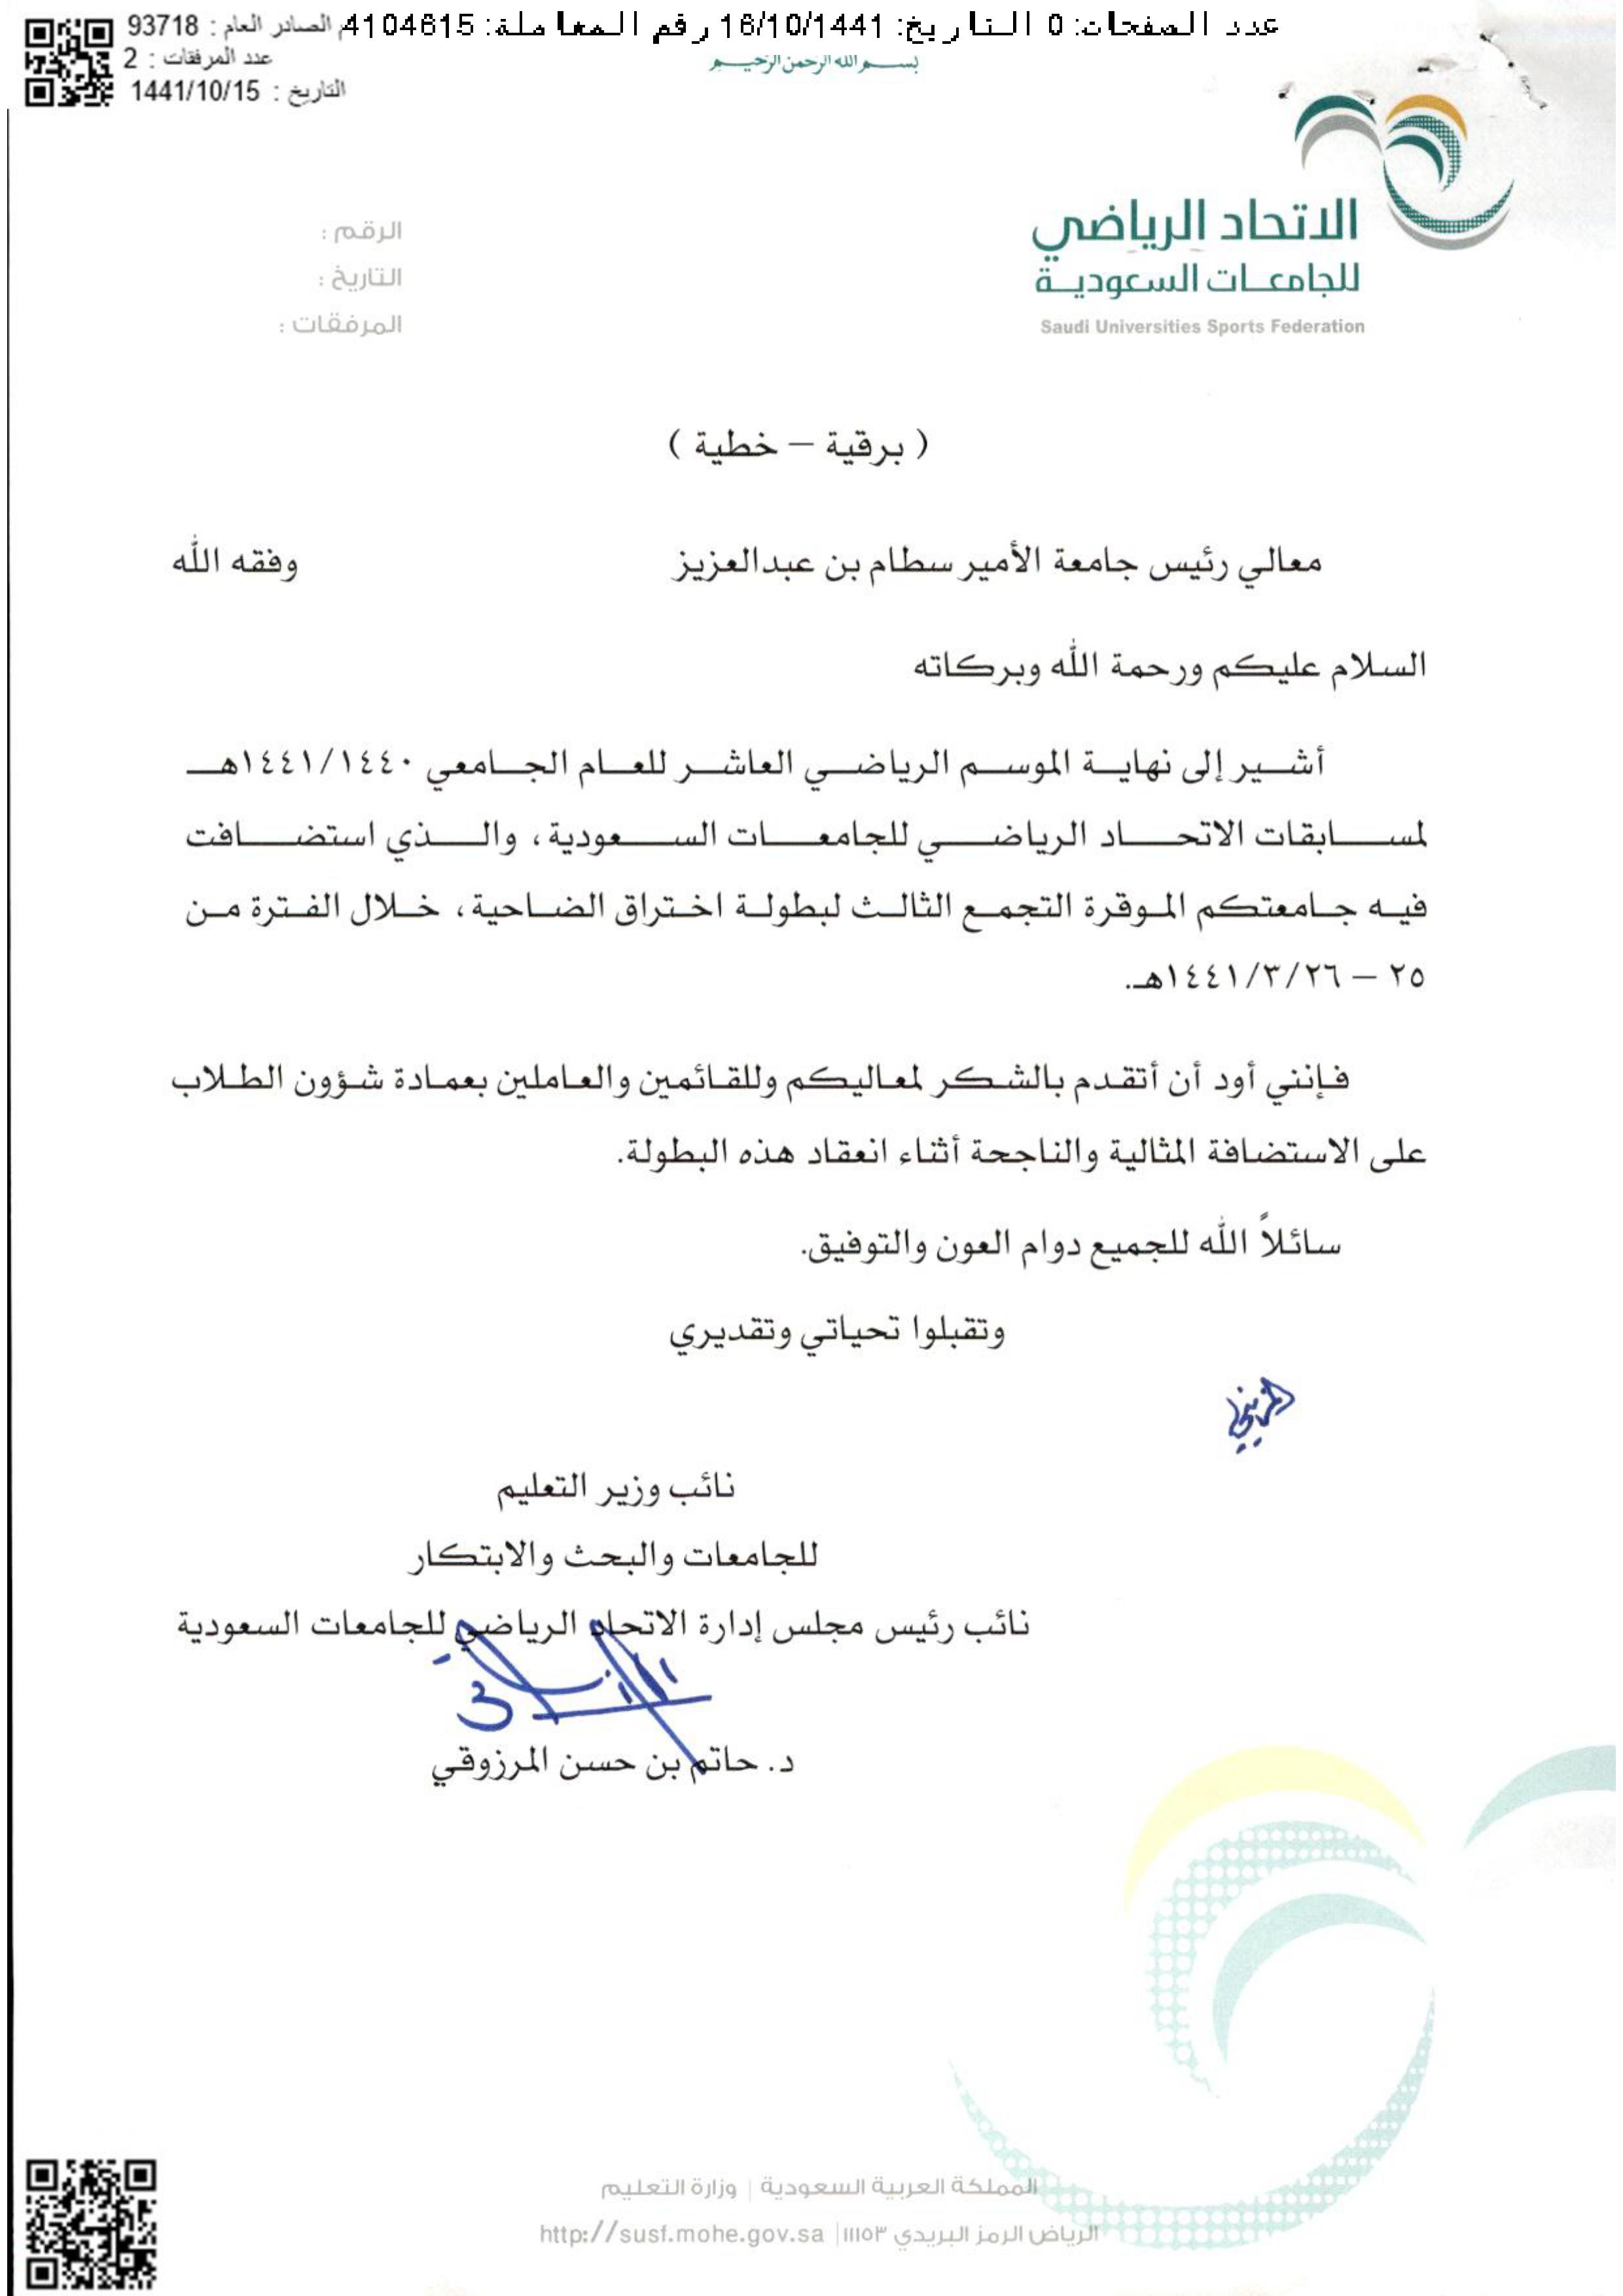 نائب رئيس الاتحاد الرياضي للجامعات السعودية يشكر جامعة الأمير سطام بن عبدالعزيز صحيفة جامعتي